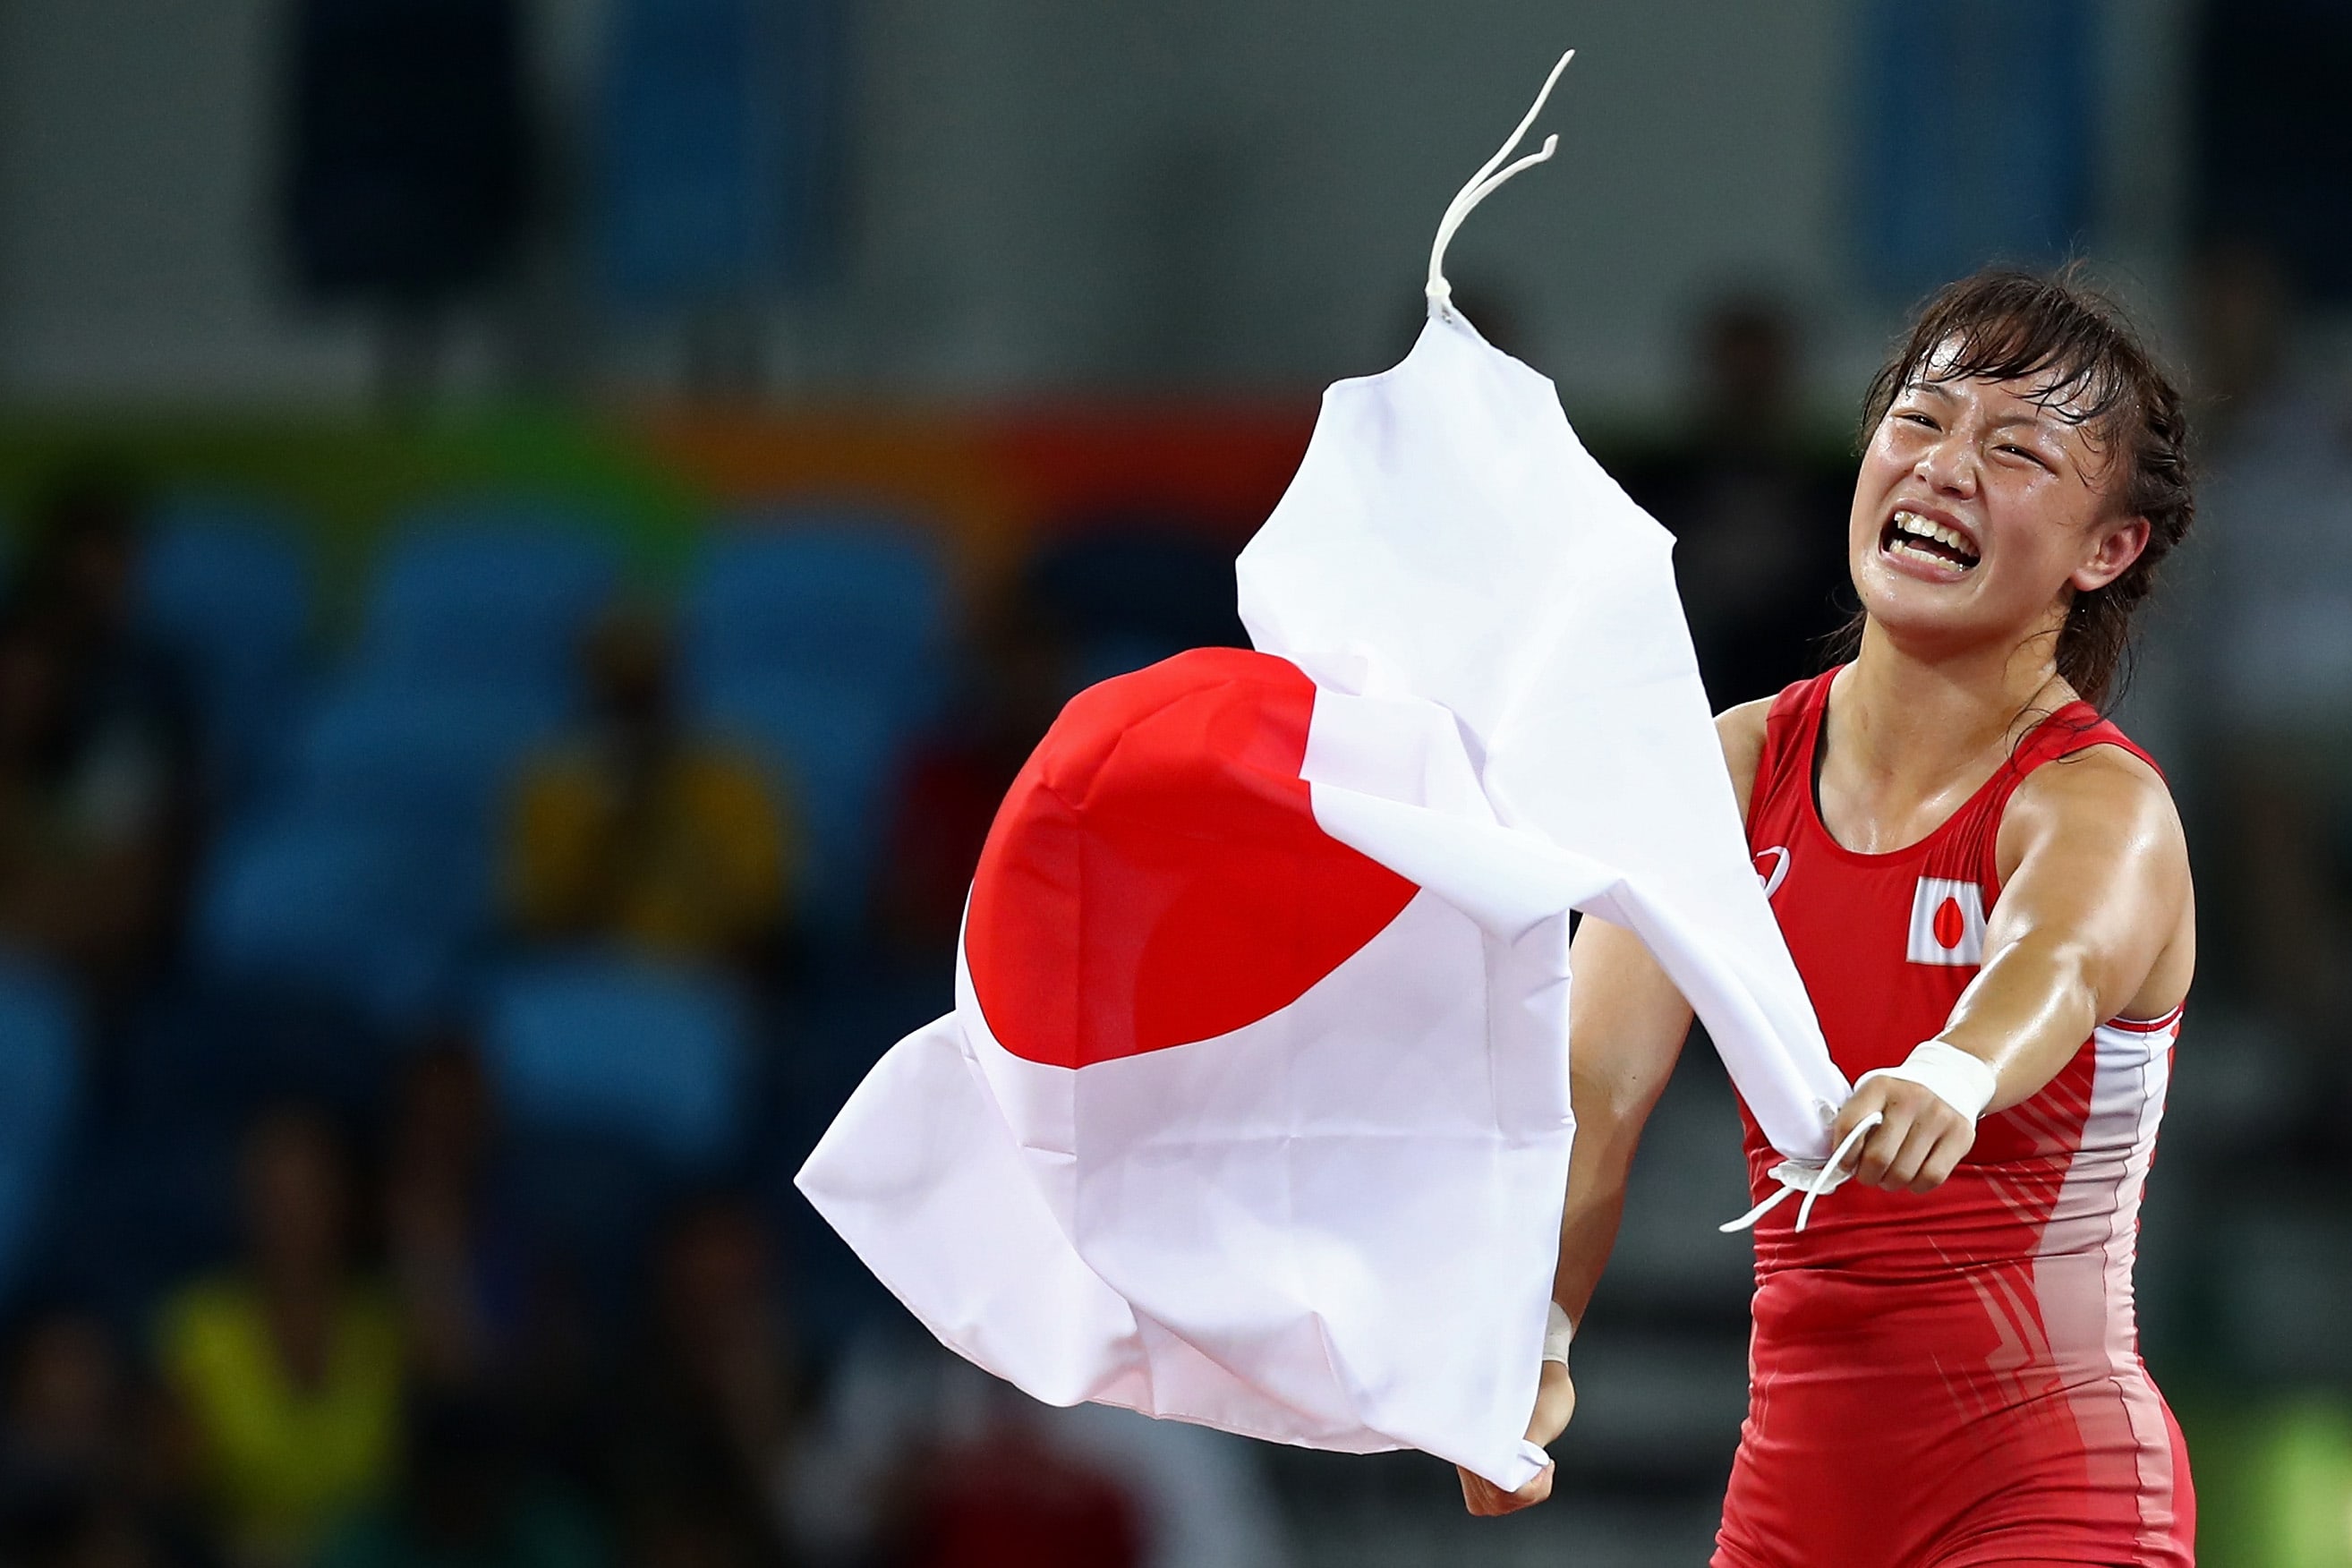 プレーバック リオ 卓球日本女子 チーム力 で獲得した銅メダルの価値